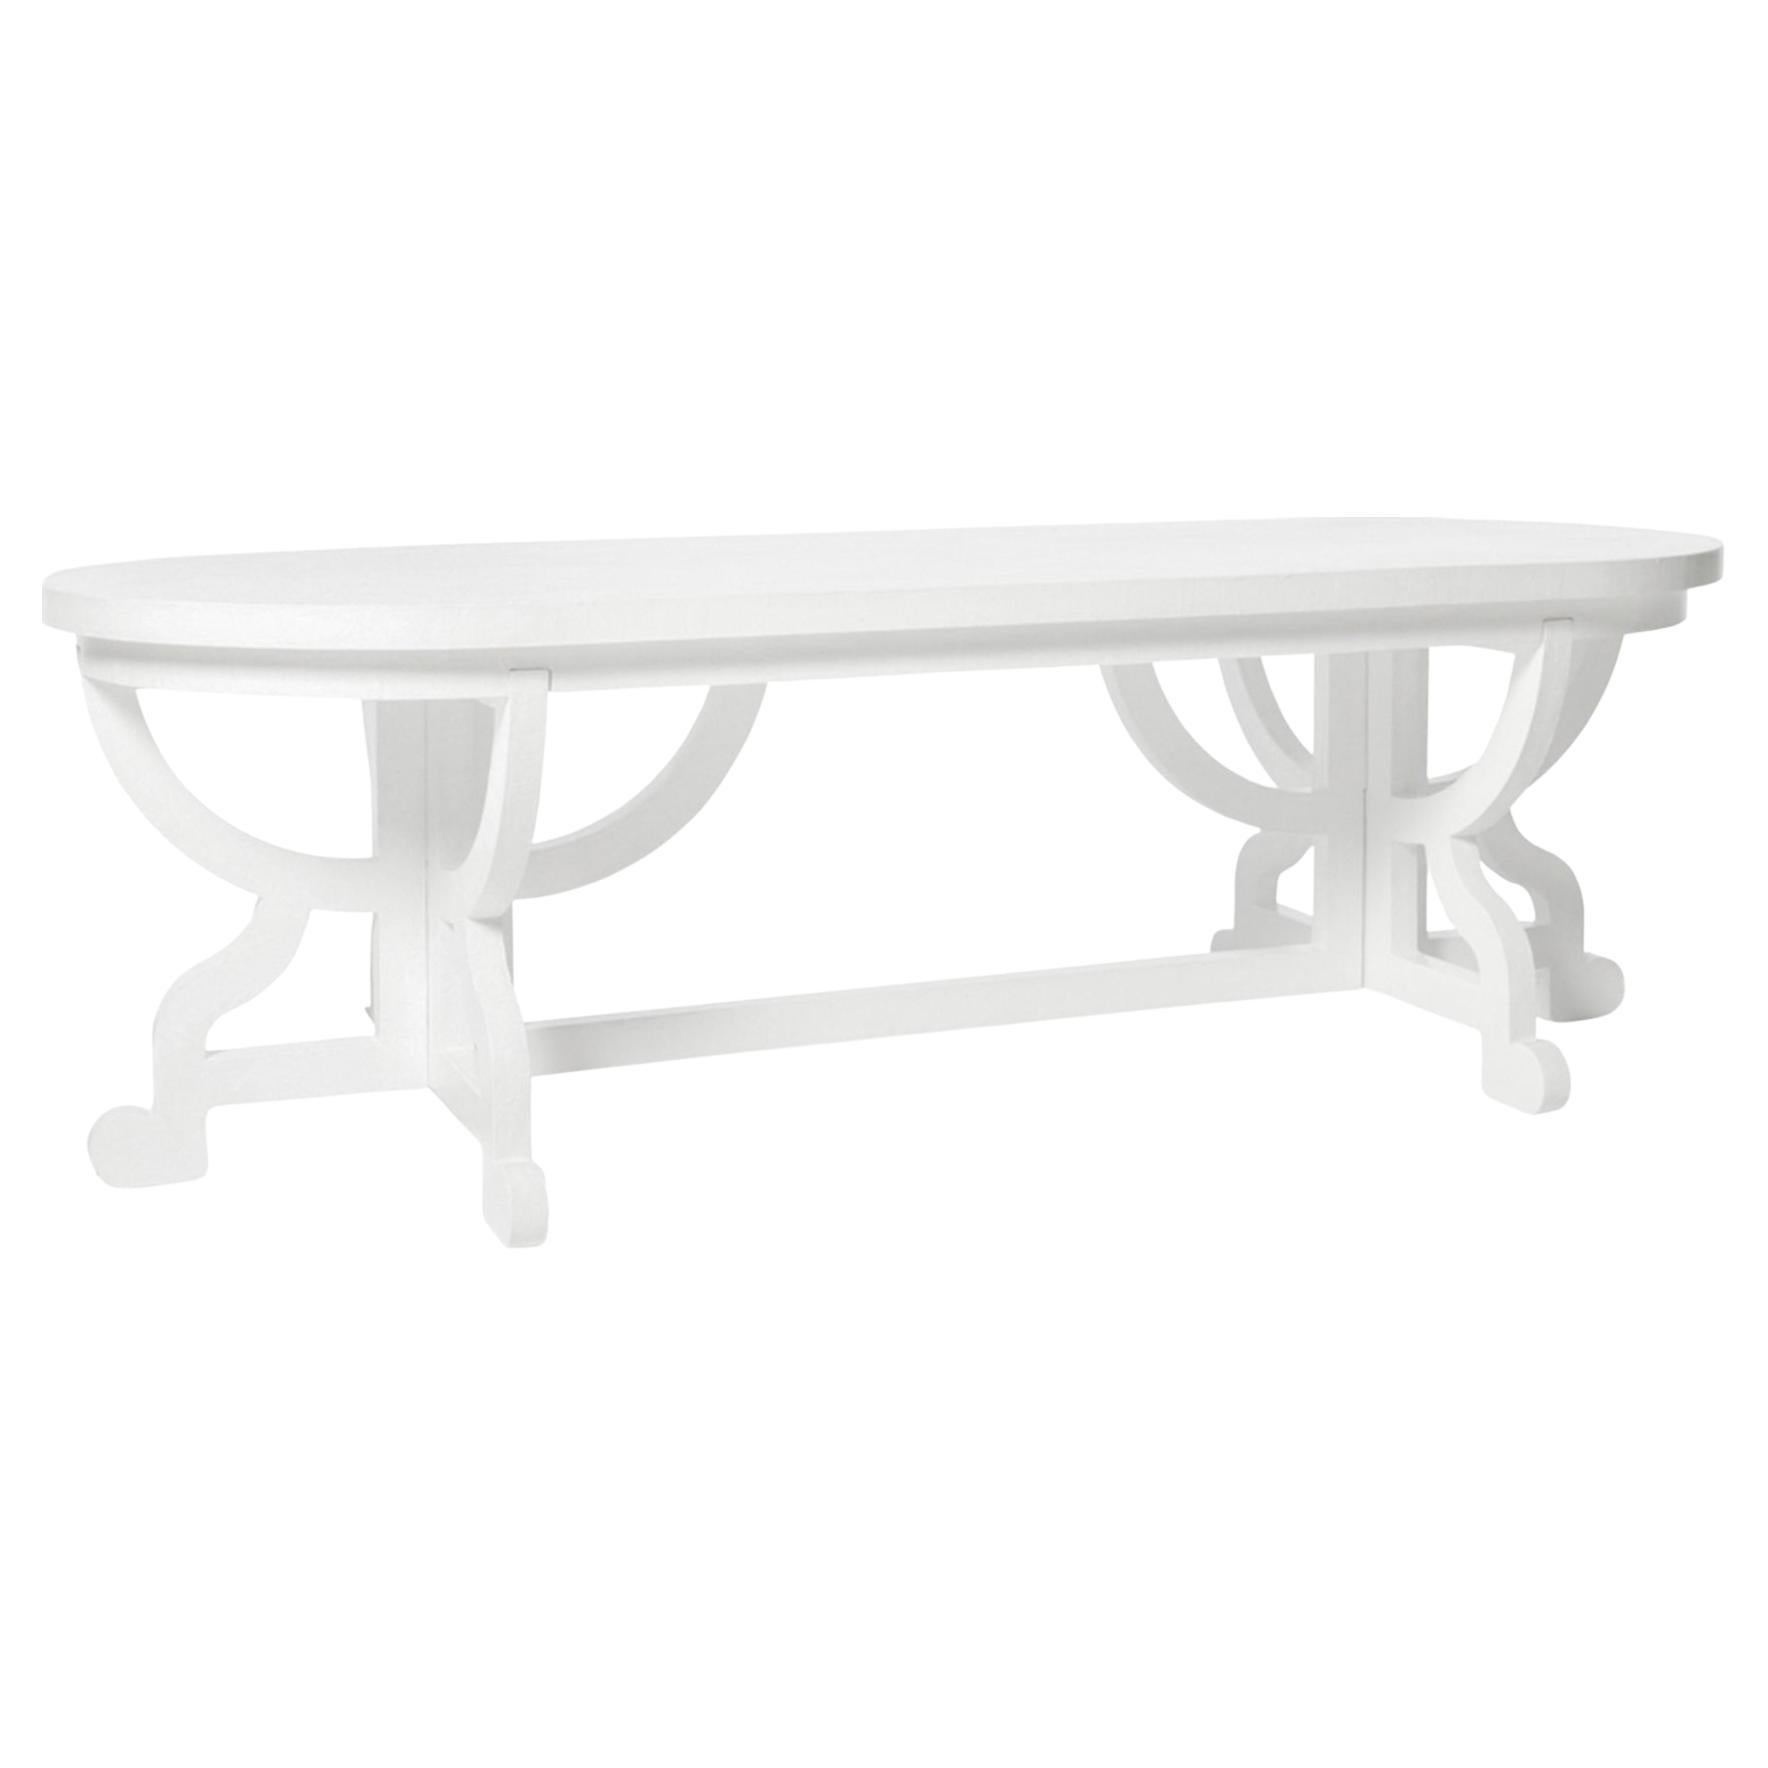 Moooi Paper Table in White Wood & Cardboard with Oak Veneer Top by Studio Job For Sale